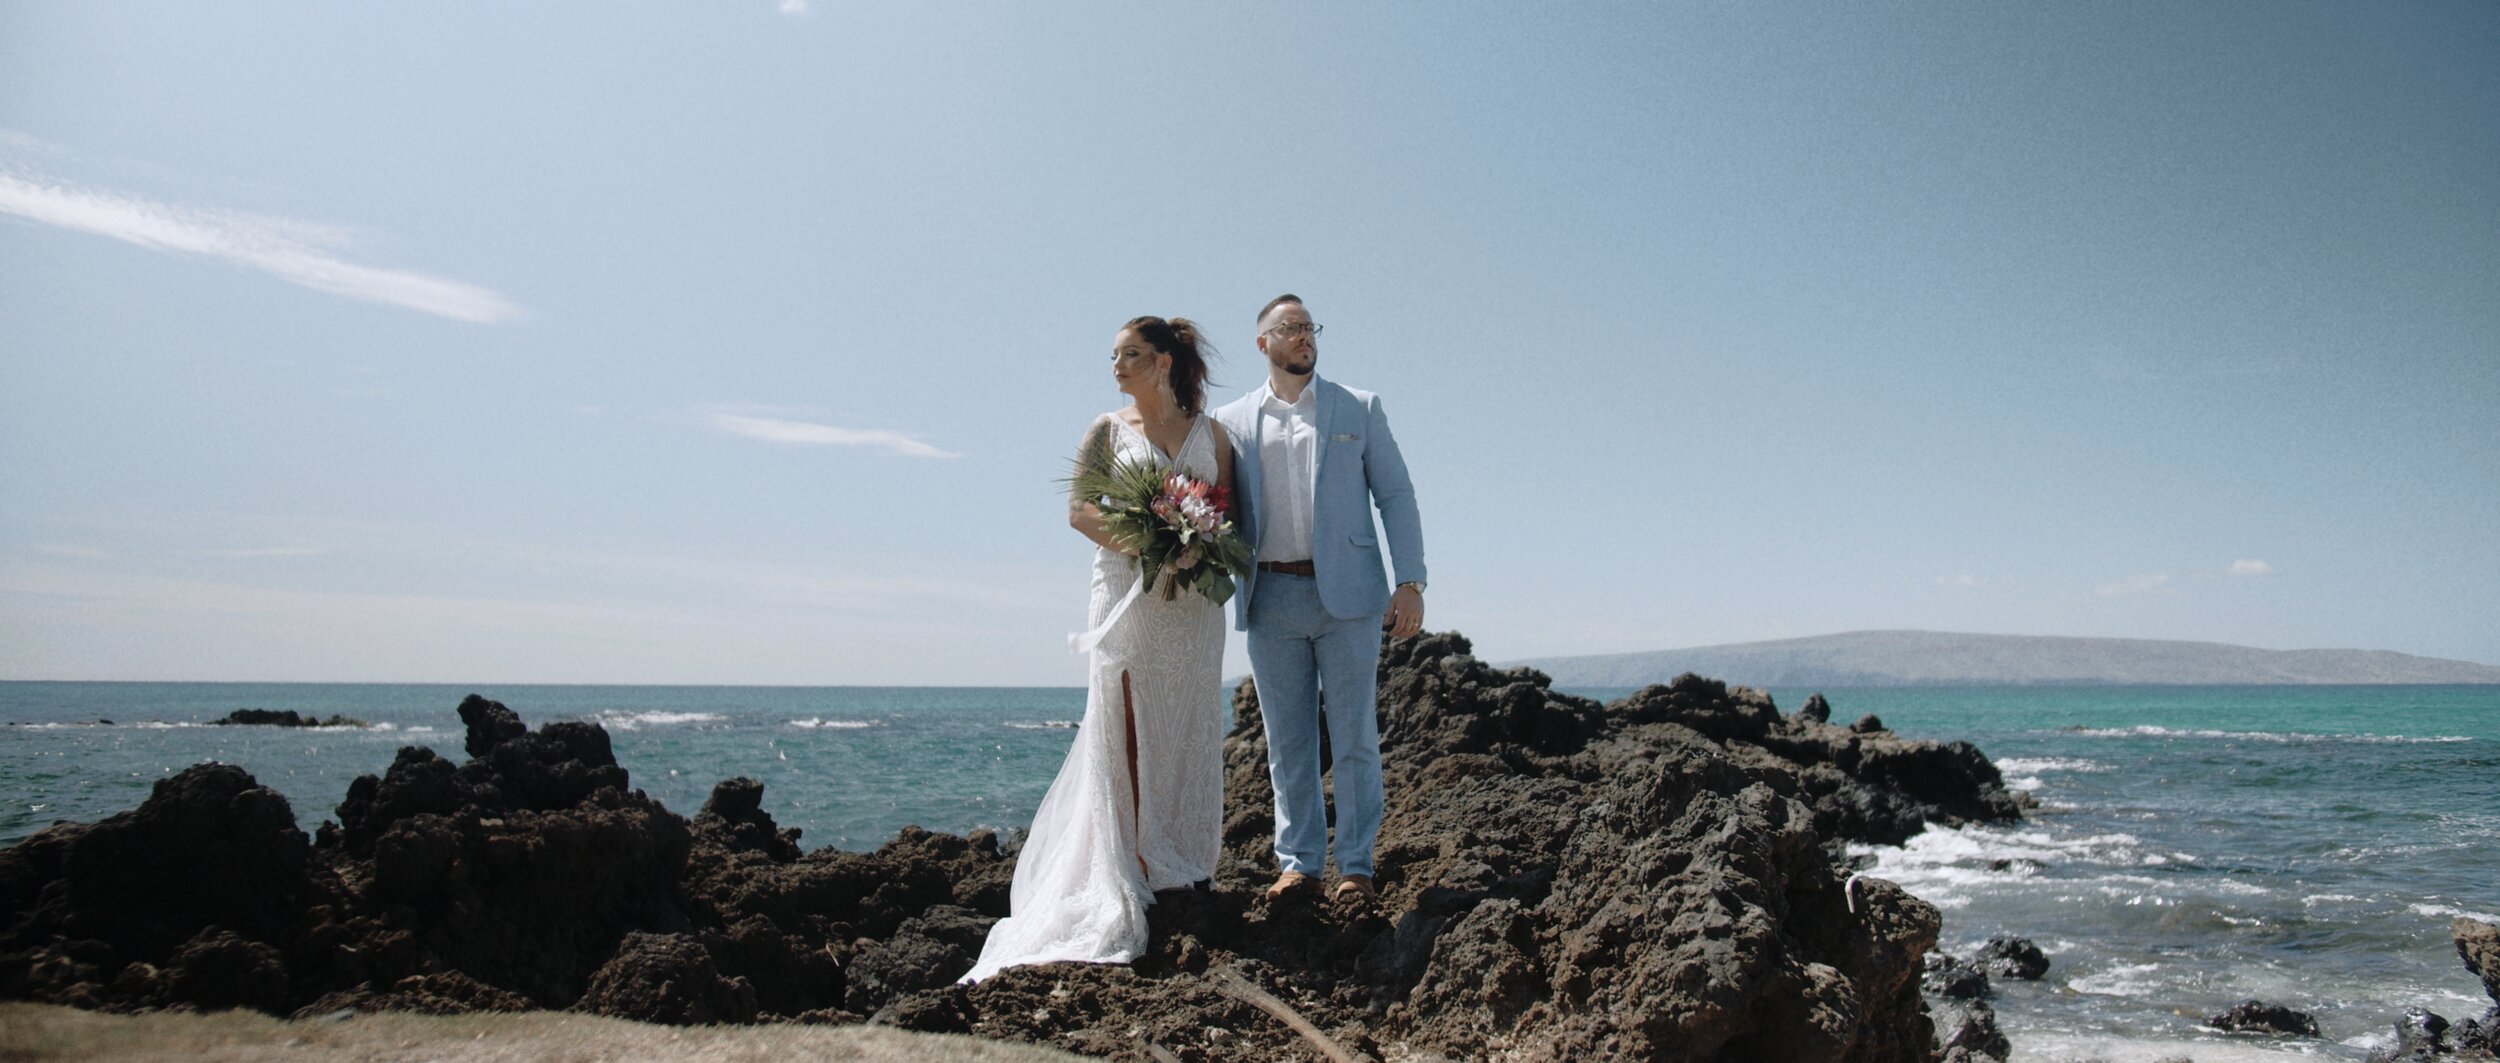 Bride and groom over lava rocks, wedding in hawaii